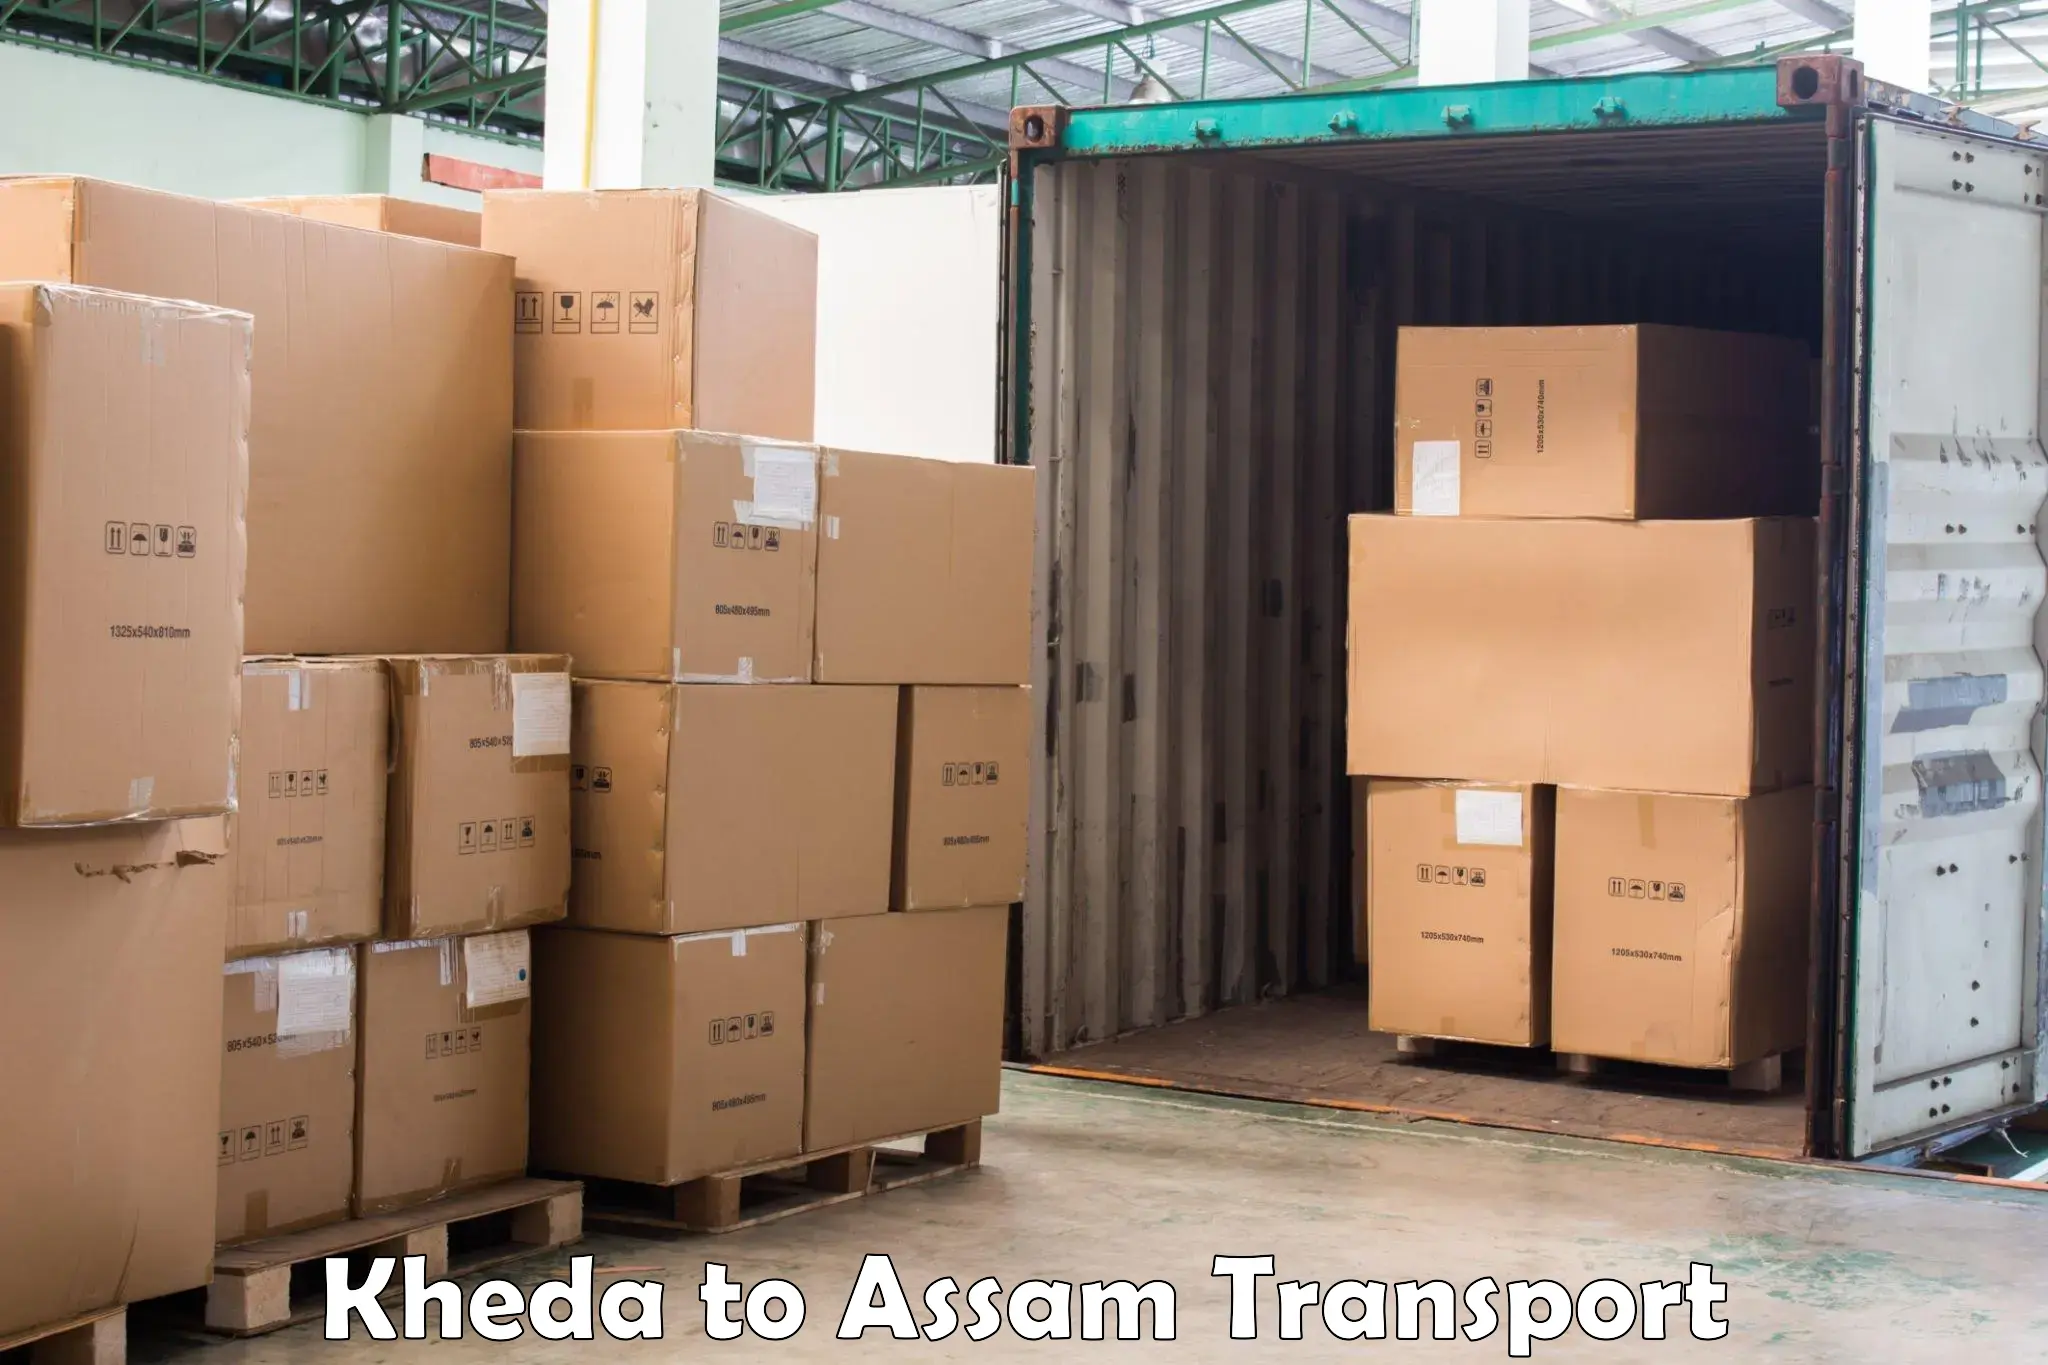 Online transport booking Kheda to Guwahati University